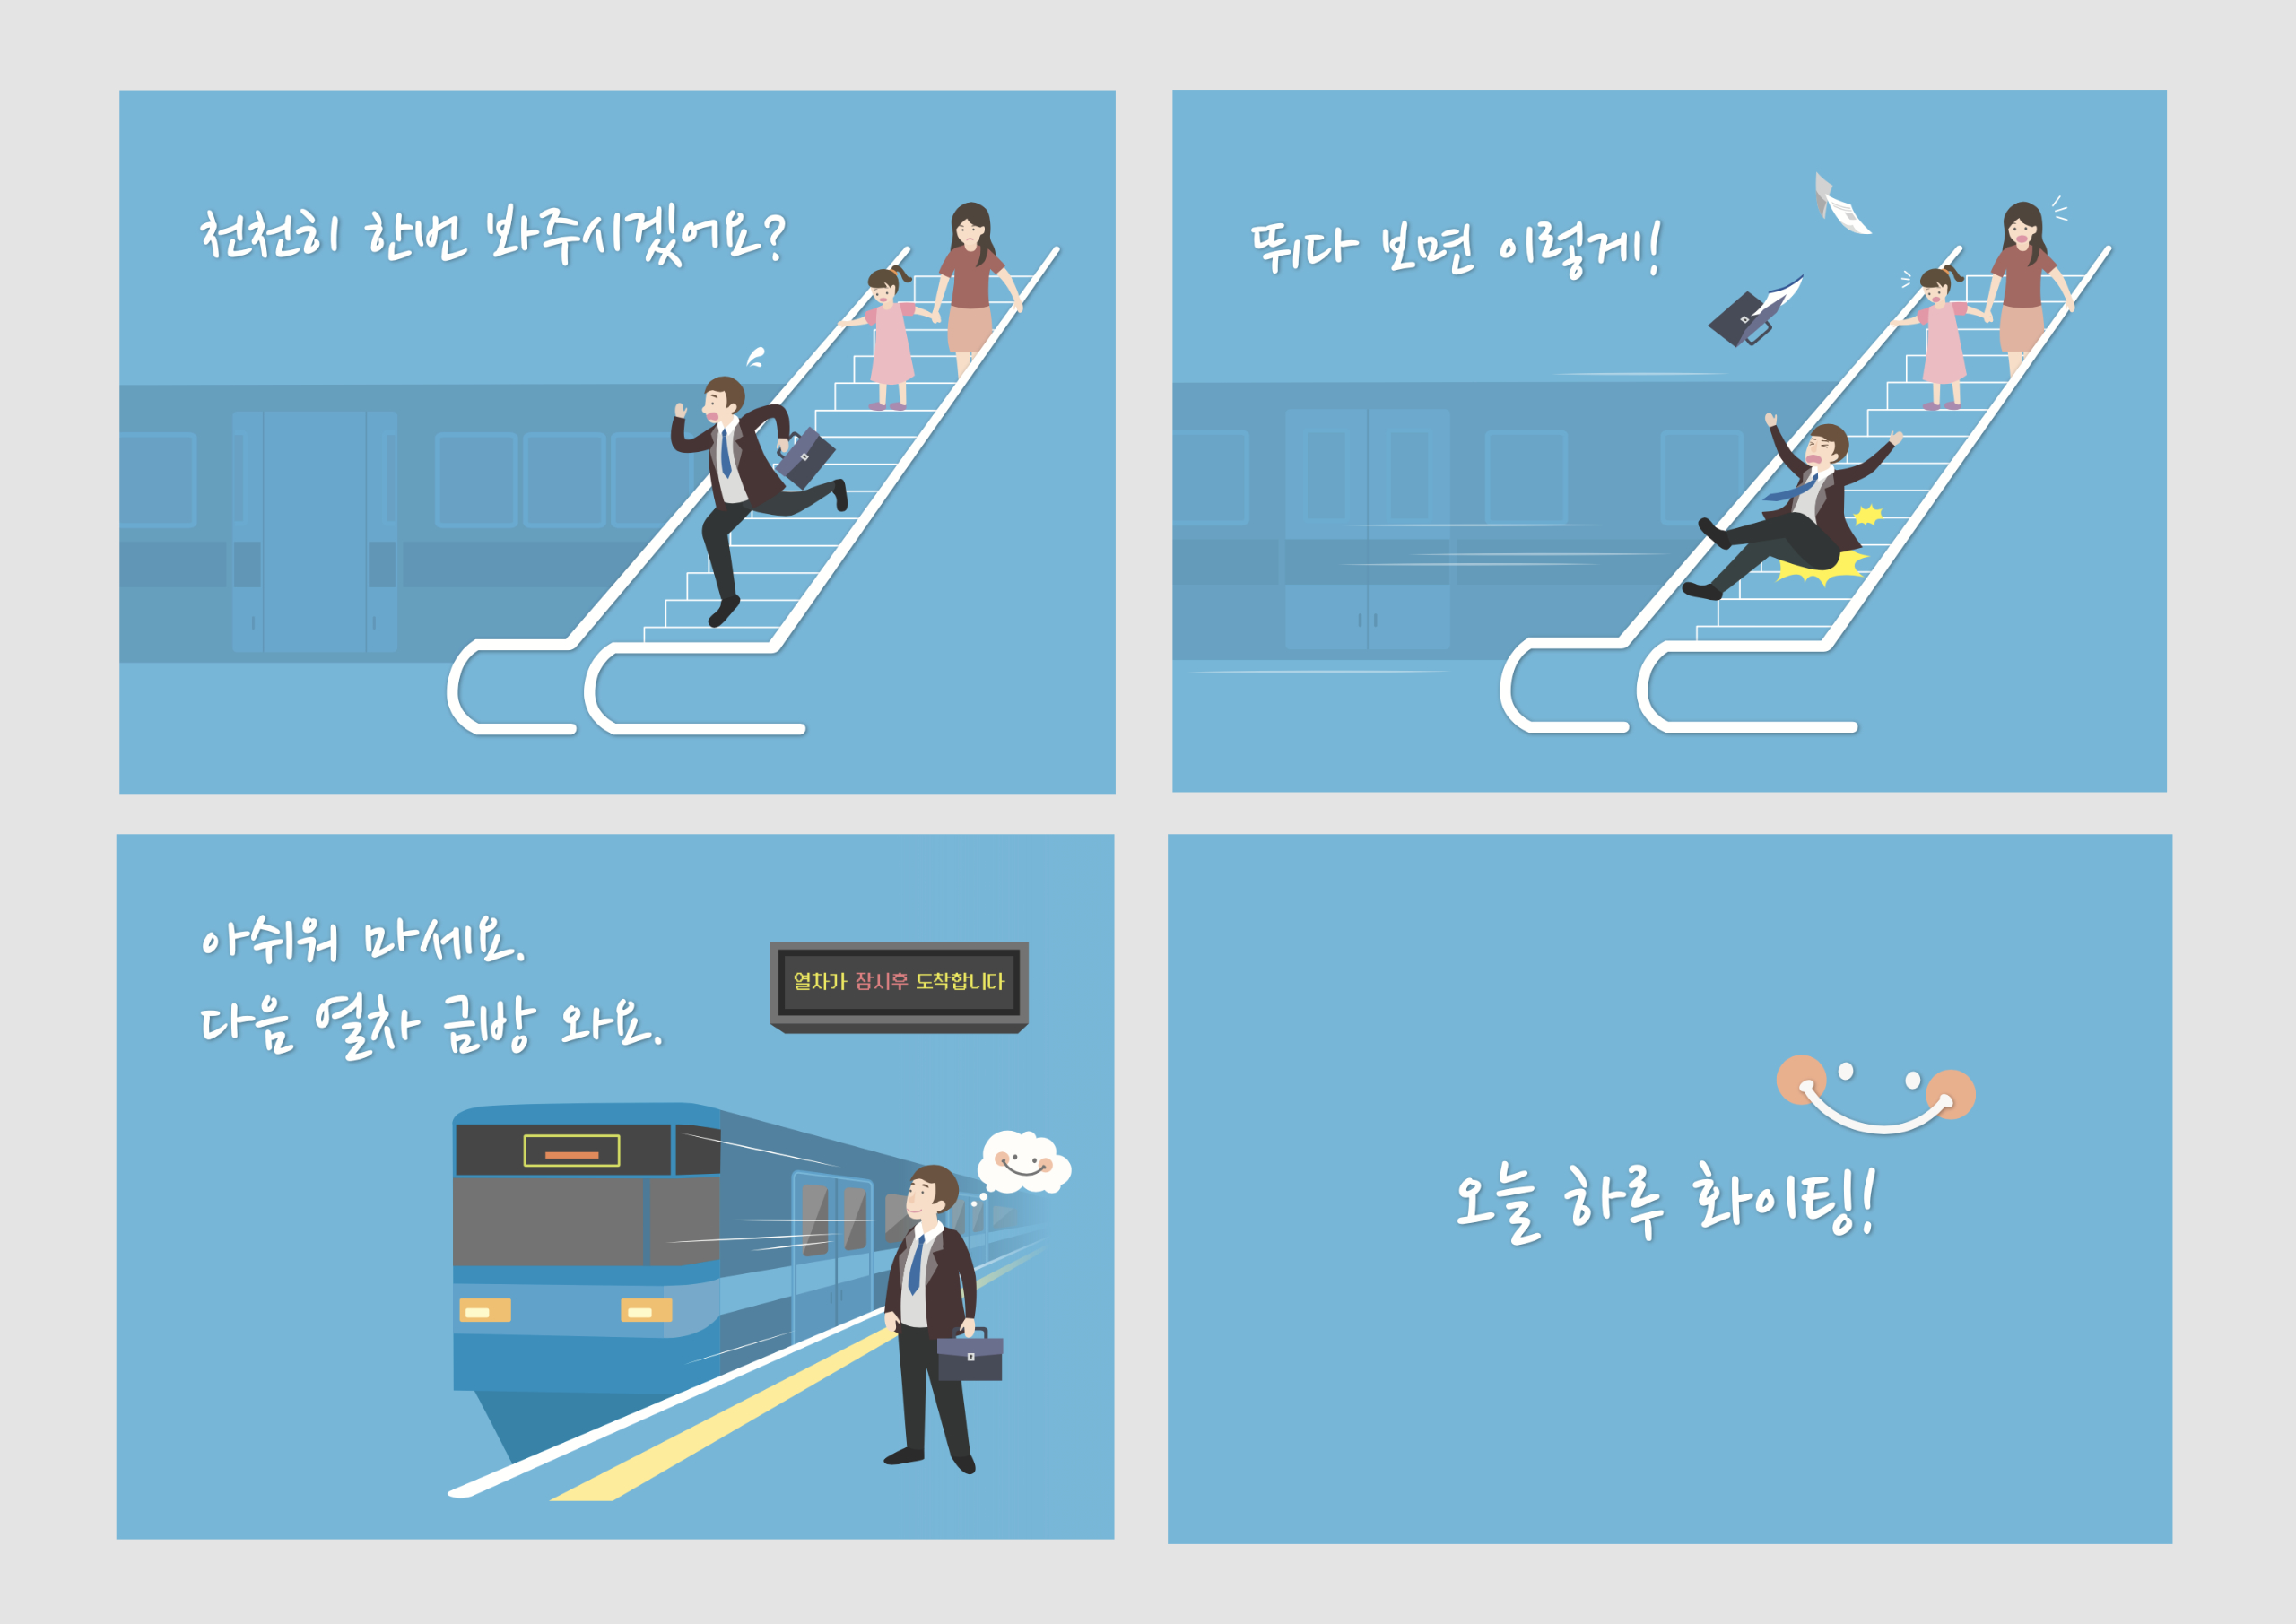 부산교통공사 지하철 넛지 캠페인 시트 엽서 제작